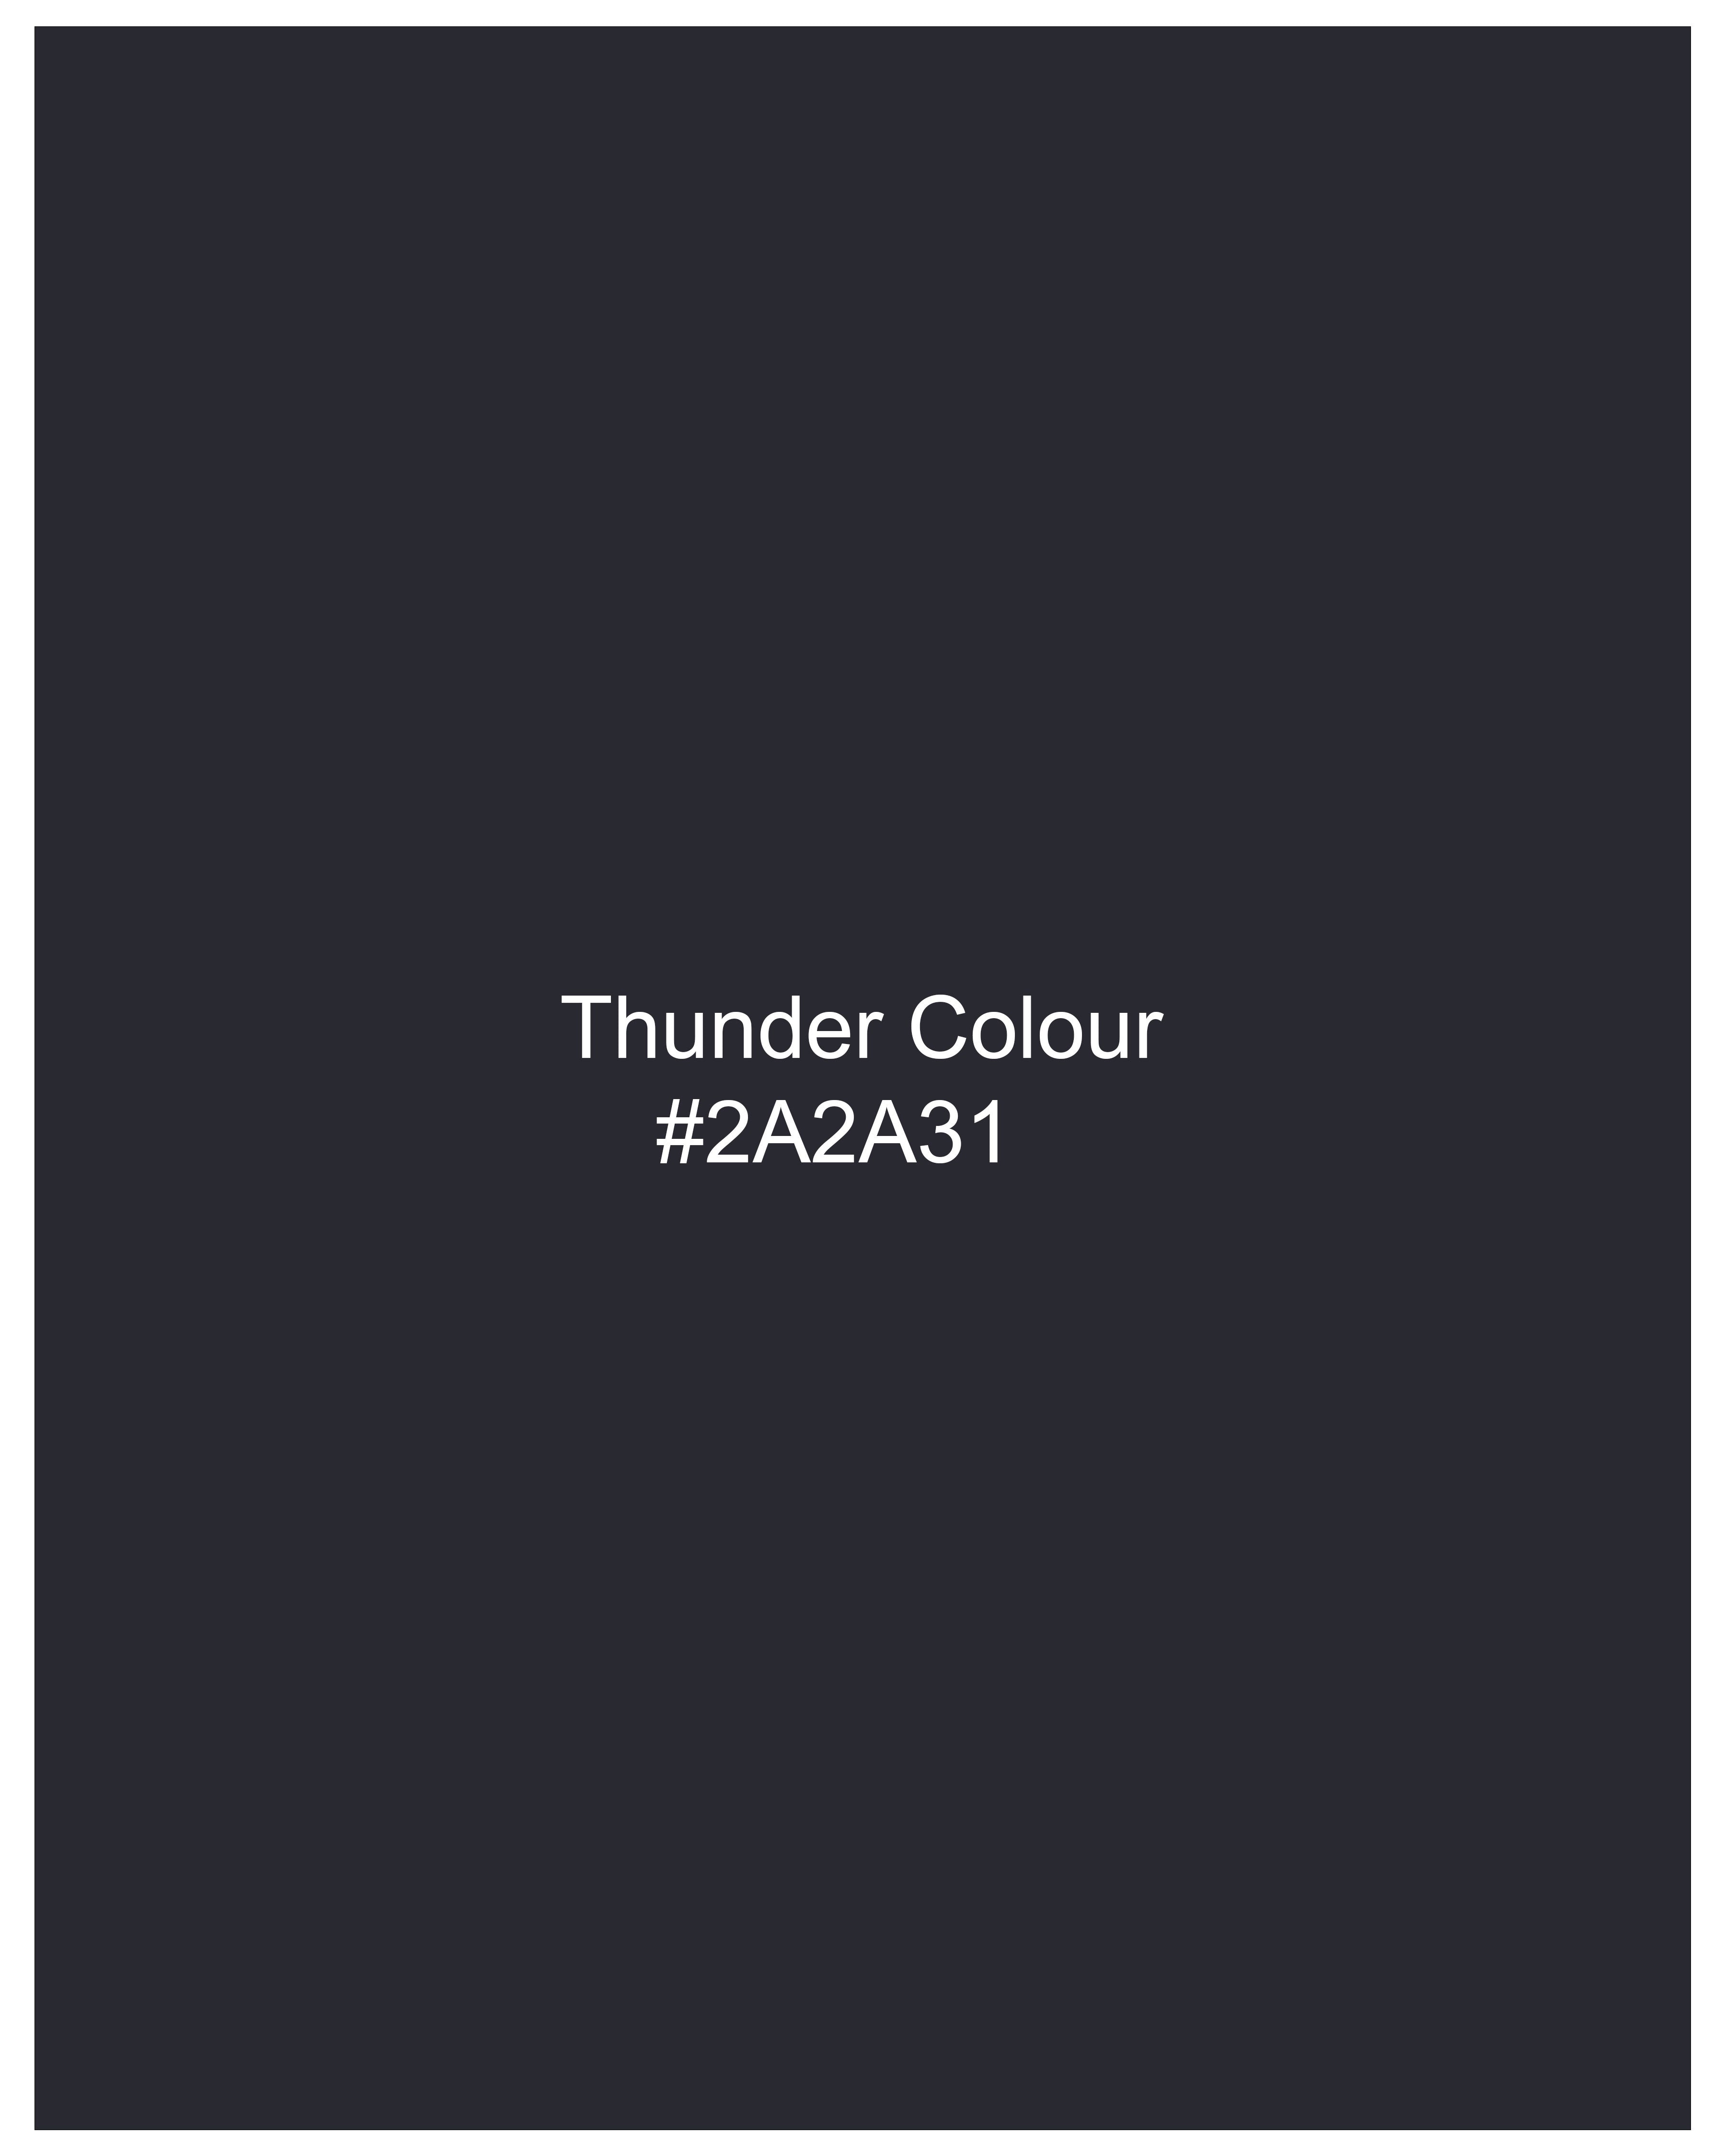 Thunder Navy Blue Premium Cotton Pants T2509-28, T2509-30, T2509-32, T2509-34, T2509-36, T2509-38, T2509-40, T2509-42, T2509-44